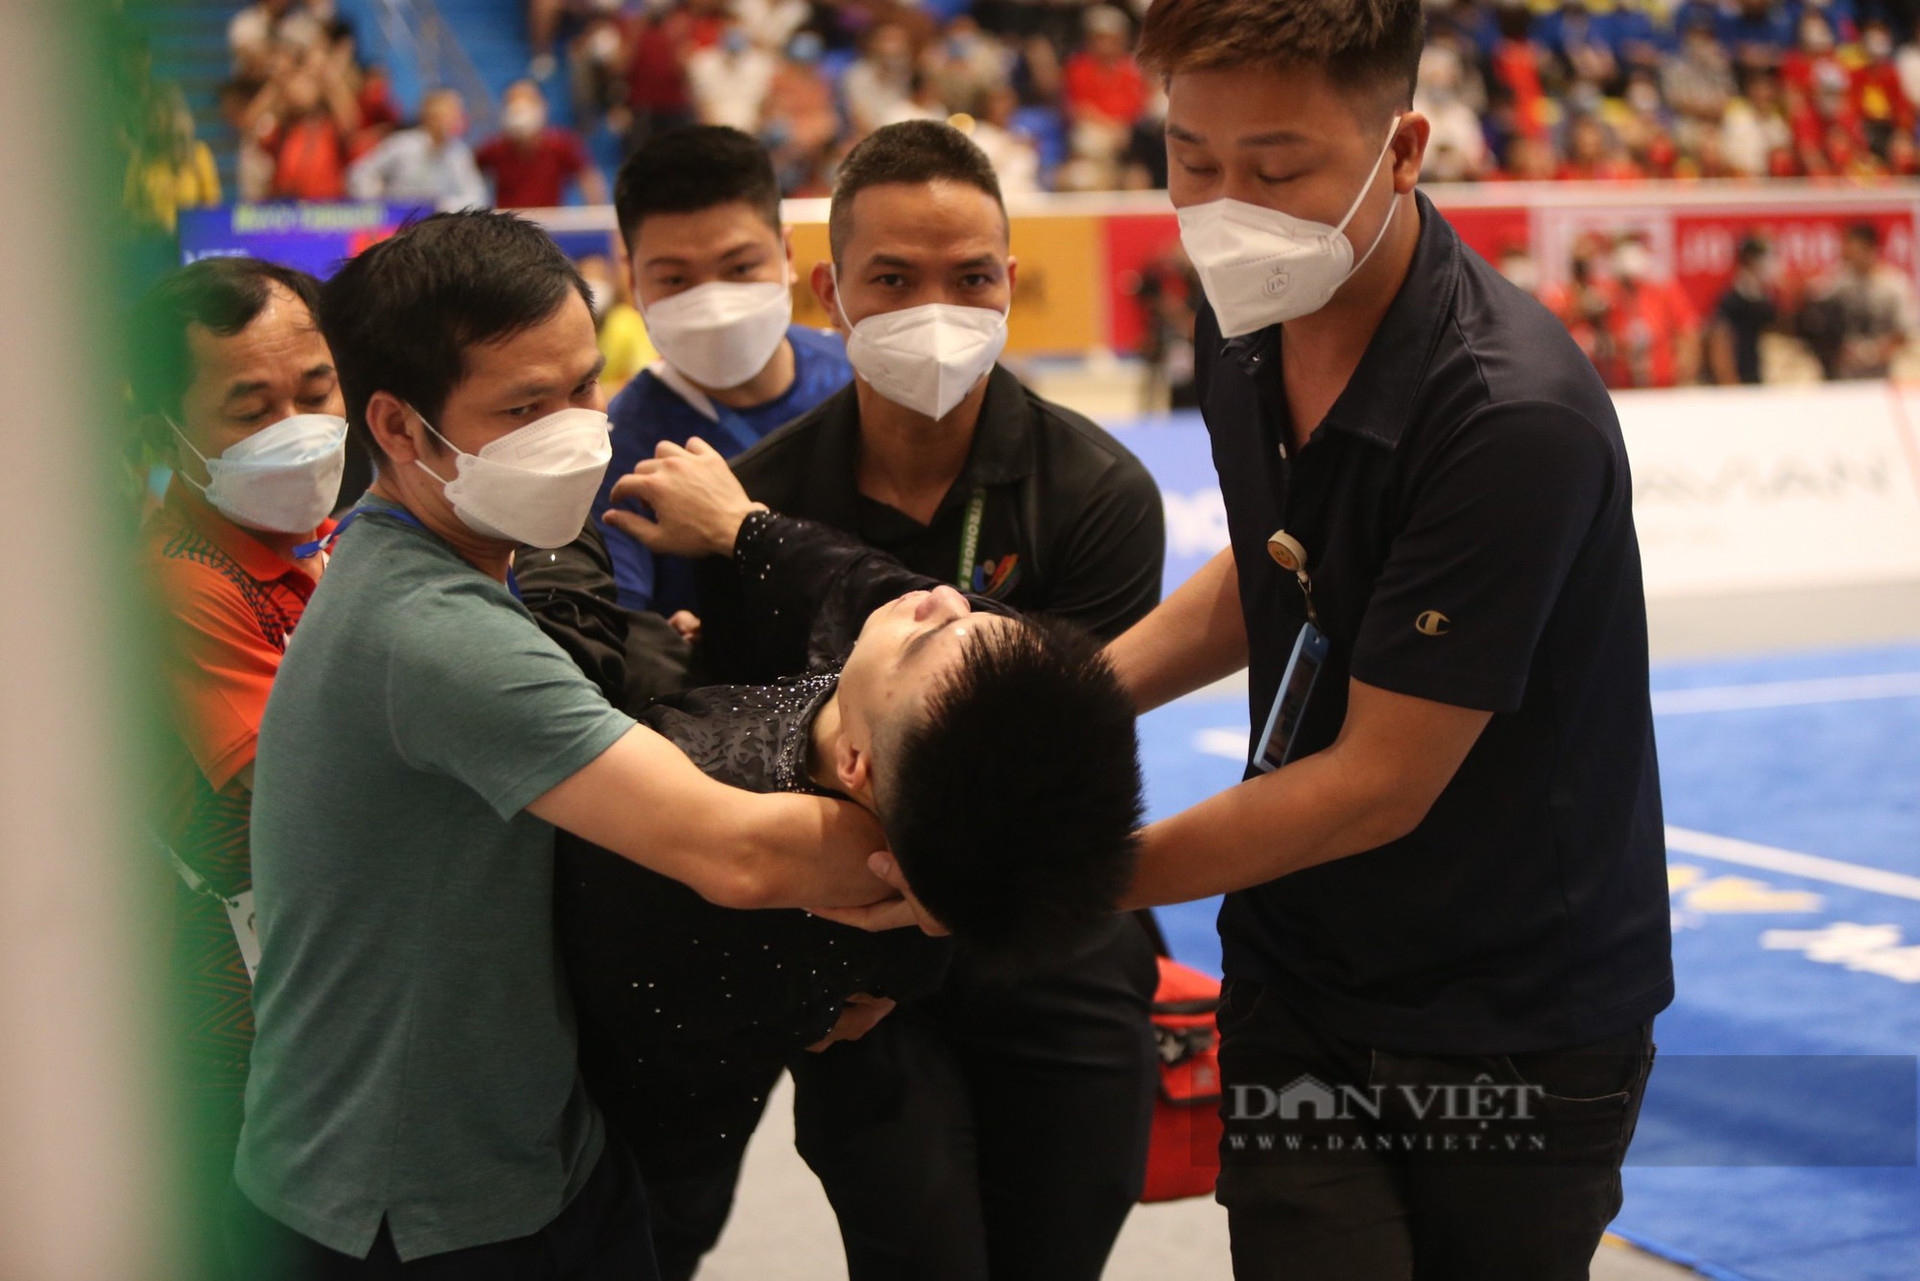 Võ sĩ Việt Nam gục ngất ngay trên sàn đấu, bỏ lỡ cơ hội tranh HCV trong gang tấc - Ảnh 6.